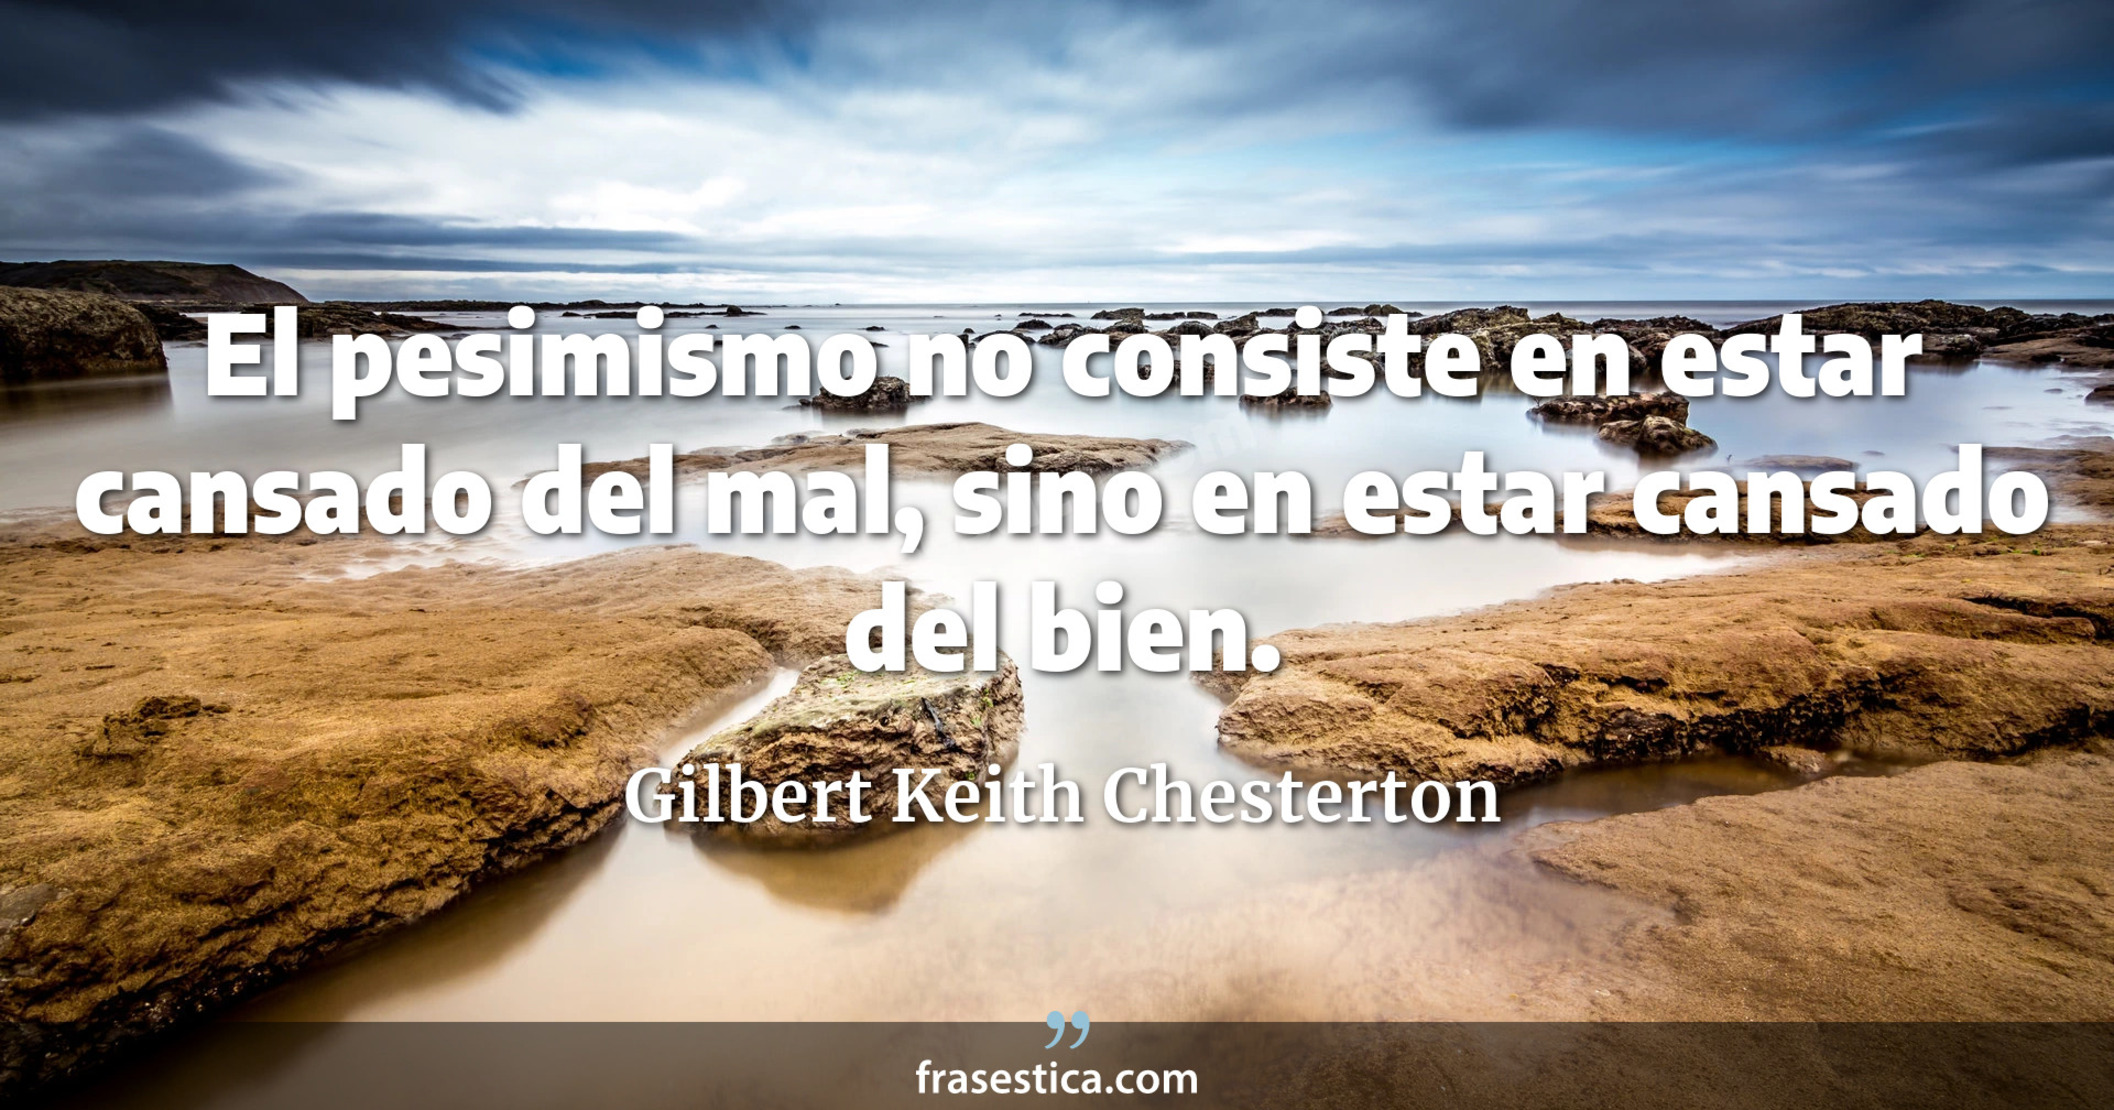 El pesimismo no consiste en estar cansado del mal, sino en estar cansado del bien. - Gilbert Keith Chesterton